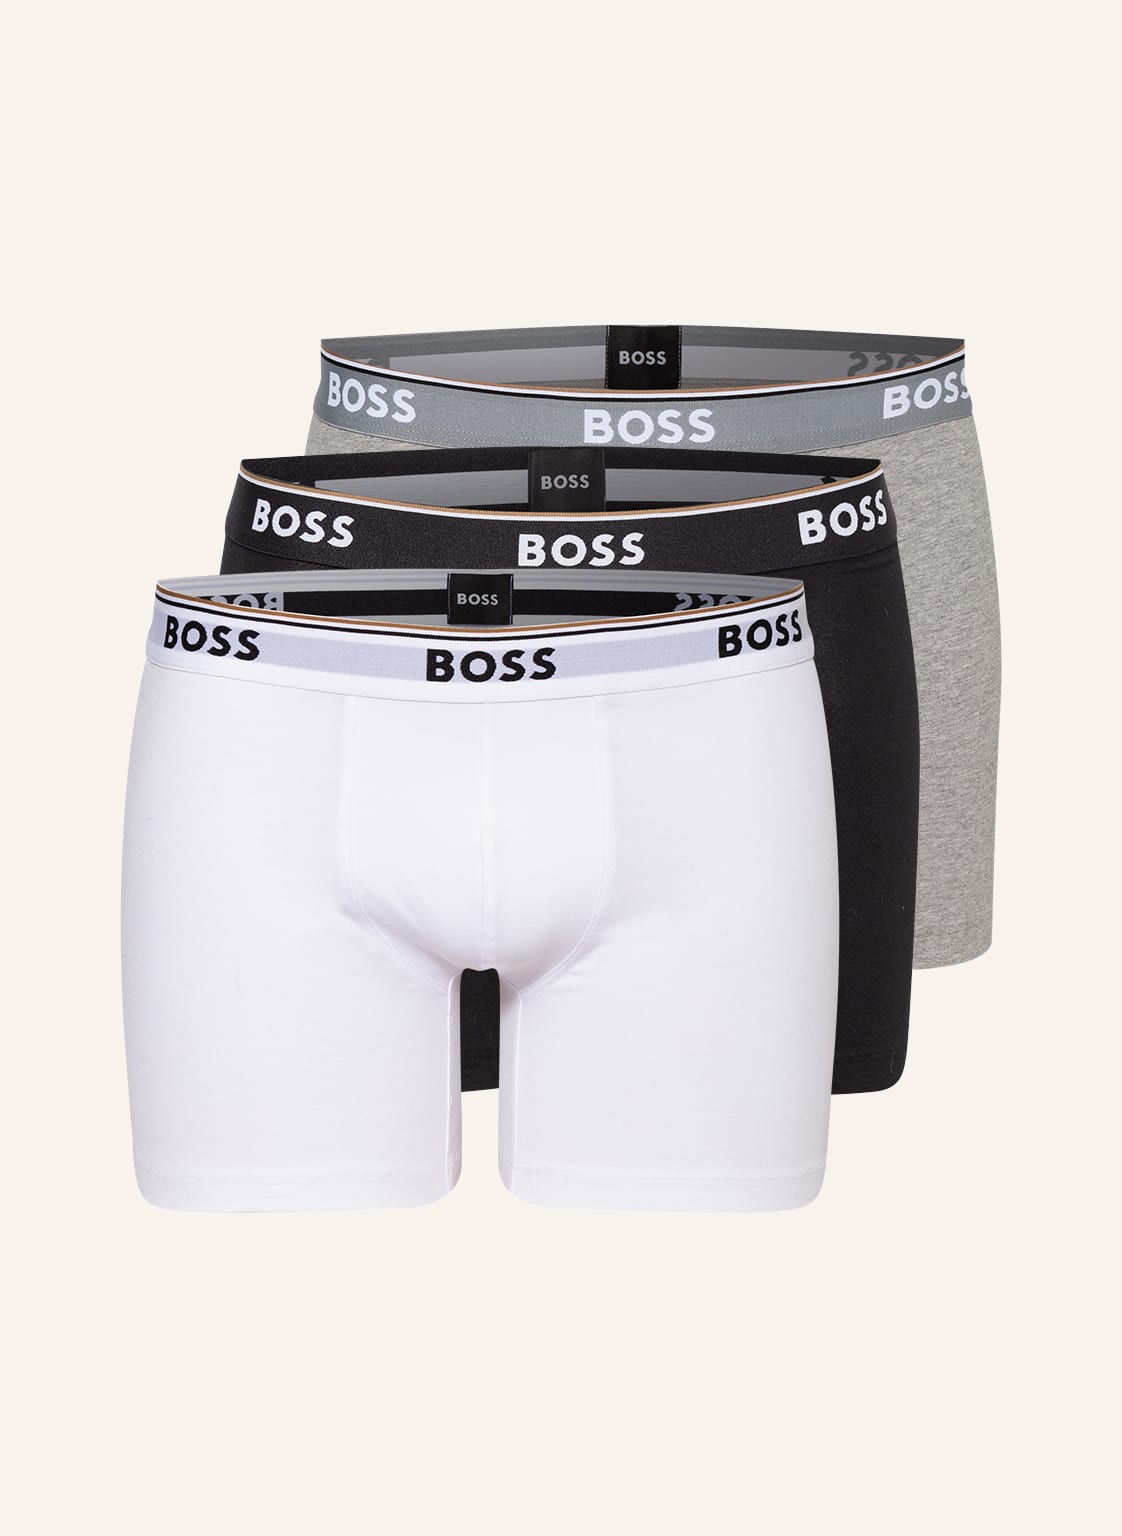 Boss 3er-Pack Boxershorts weiss von Boss